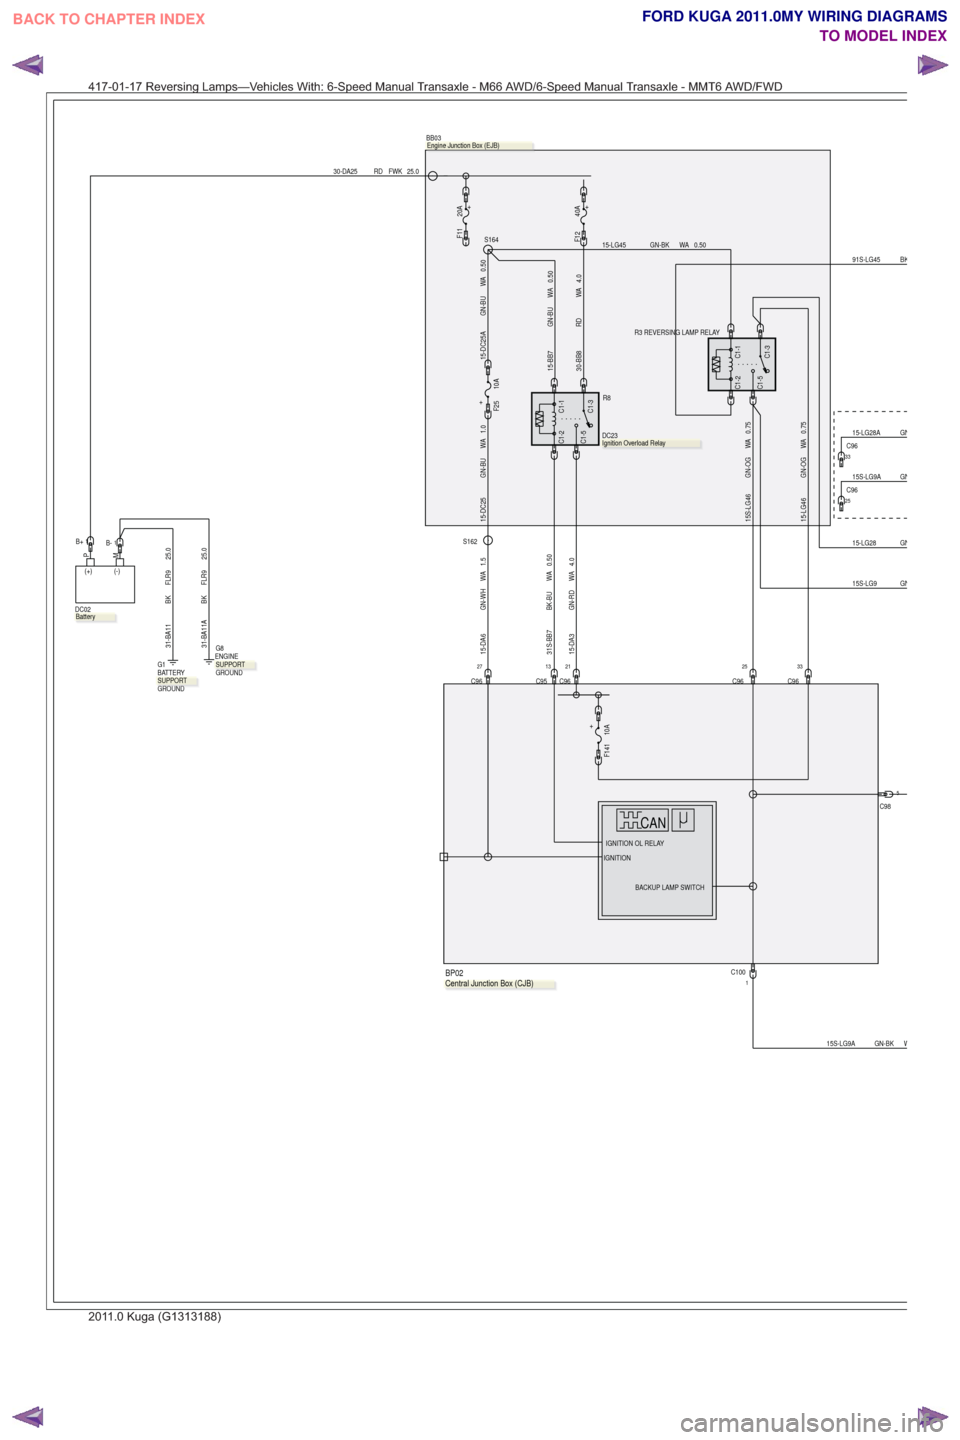 FORD KUGA 2011 1.G Wiring Diagram Workshop Manual 15-LG28 GN
GN15S-LG9
30-DA25 RD FWK 25.0
PM
(+) (-)
DC02,
21
C96
4.0
WA
GN-RD
15-DA3
13
C95
C1-5
C1-1C1-3
C1-2
R8
,
DC23
1B+
25
C96
+20A
F11
+10A
F141
C1-5
C1-1C1-3
C1-2
R3 REVERSING LAMP RELAY
BB03
,